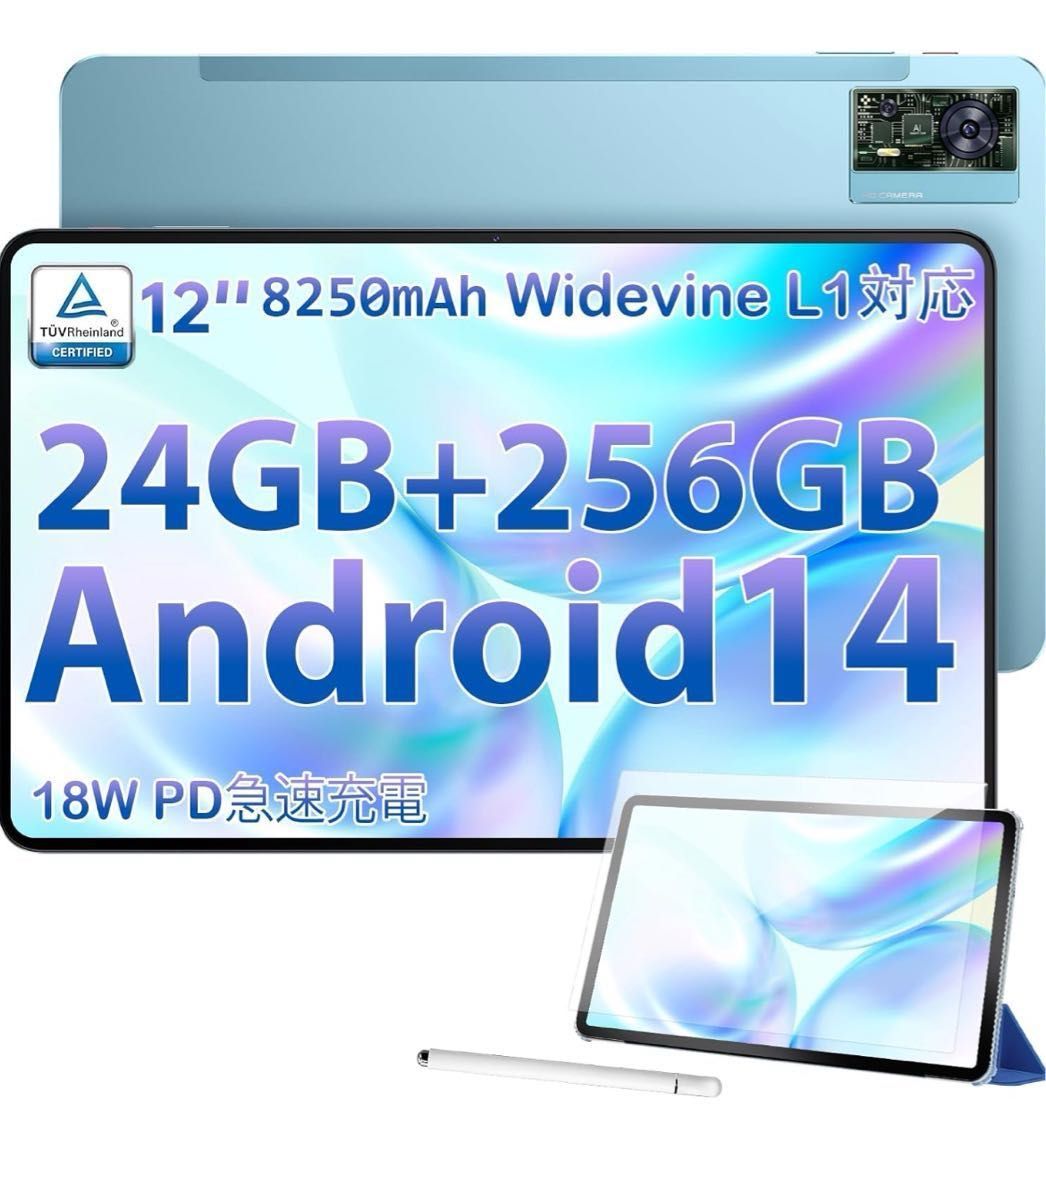 タブレット 12 インチ、Android 14 タブレット 8コアCPU、Widevine L1 対応タブレット